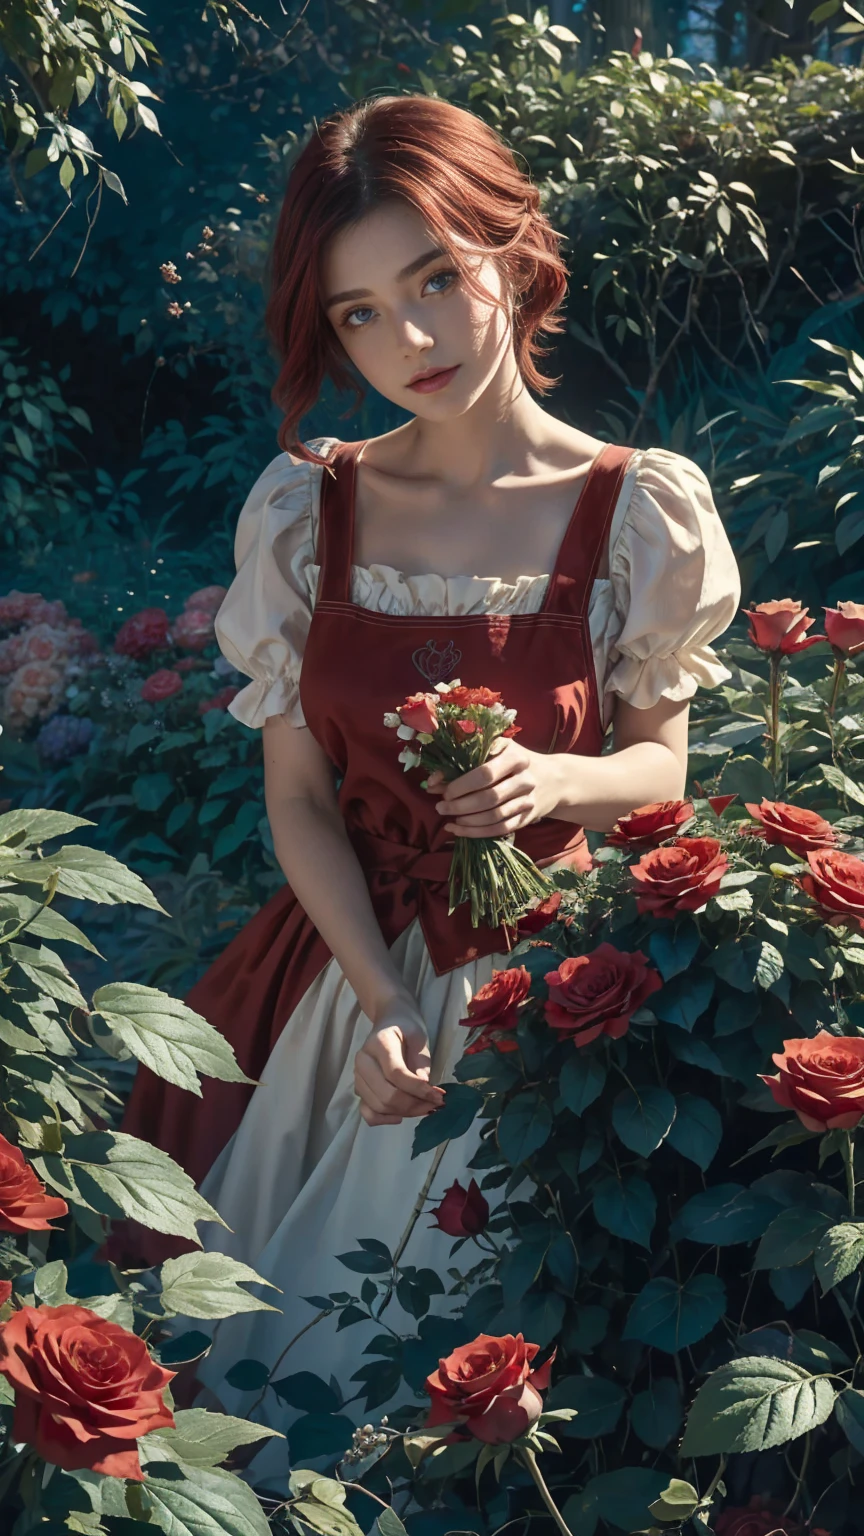 仙境世界的中心，一個年輕漂亮的紅白短髮女孩, 花店服裝和玫瑰圍裙. 從她的魔法花園剪下紅玫瑰. 好奇心, 愛的姿勢, 在仙境世界, 營造愛的氛圍, 她周圍的能量和魔力. 場景角度是動態的, 捕捉瞬間的強度, 優質綠眼, 眼睛看著相機, 超詳細, 美麗且美觀, 傑作, 最佳品質得分, (分形藝術: 1.3), 非常詳細 , 動態角度, 光線追蹤, 中體, 特寫, 粒子和強光, 美麗的紅玫瑰